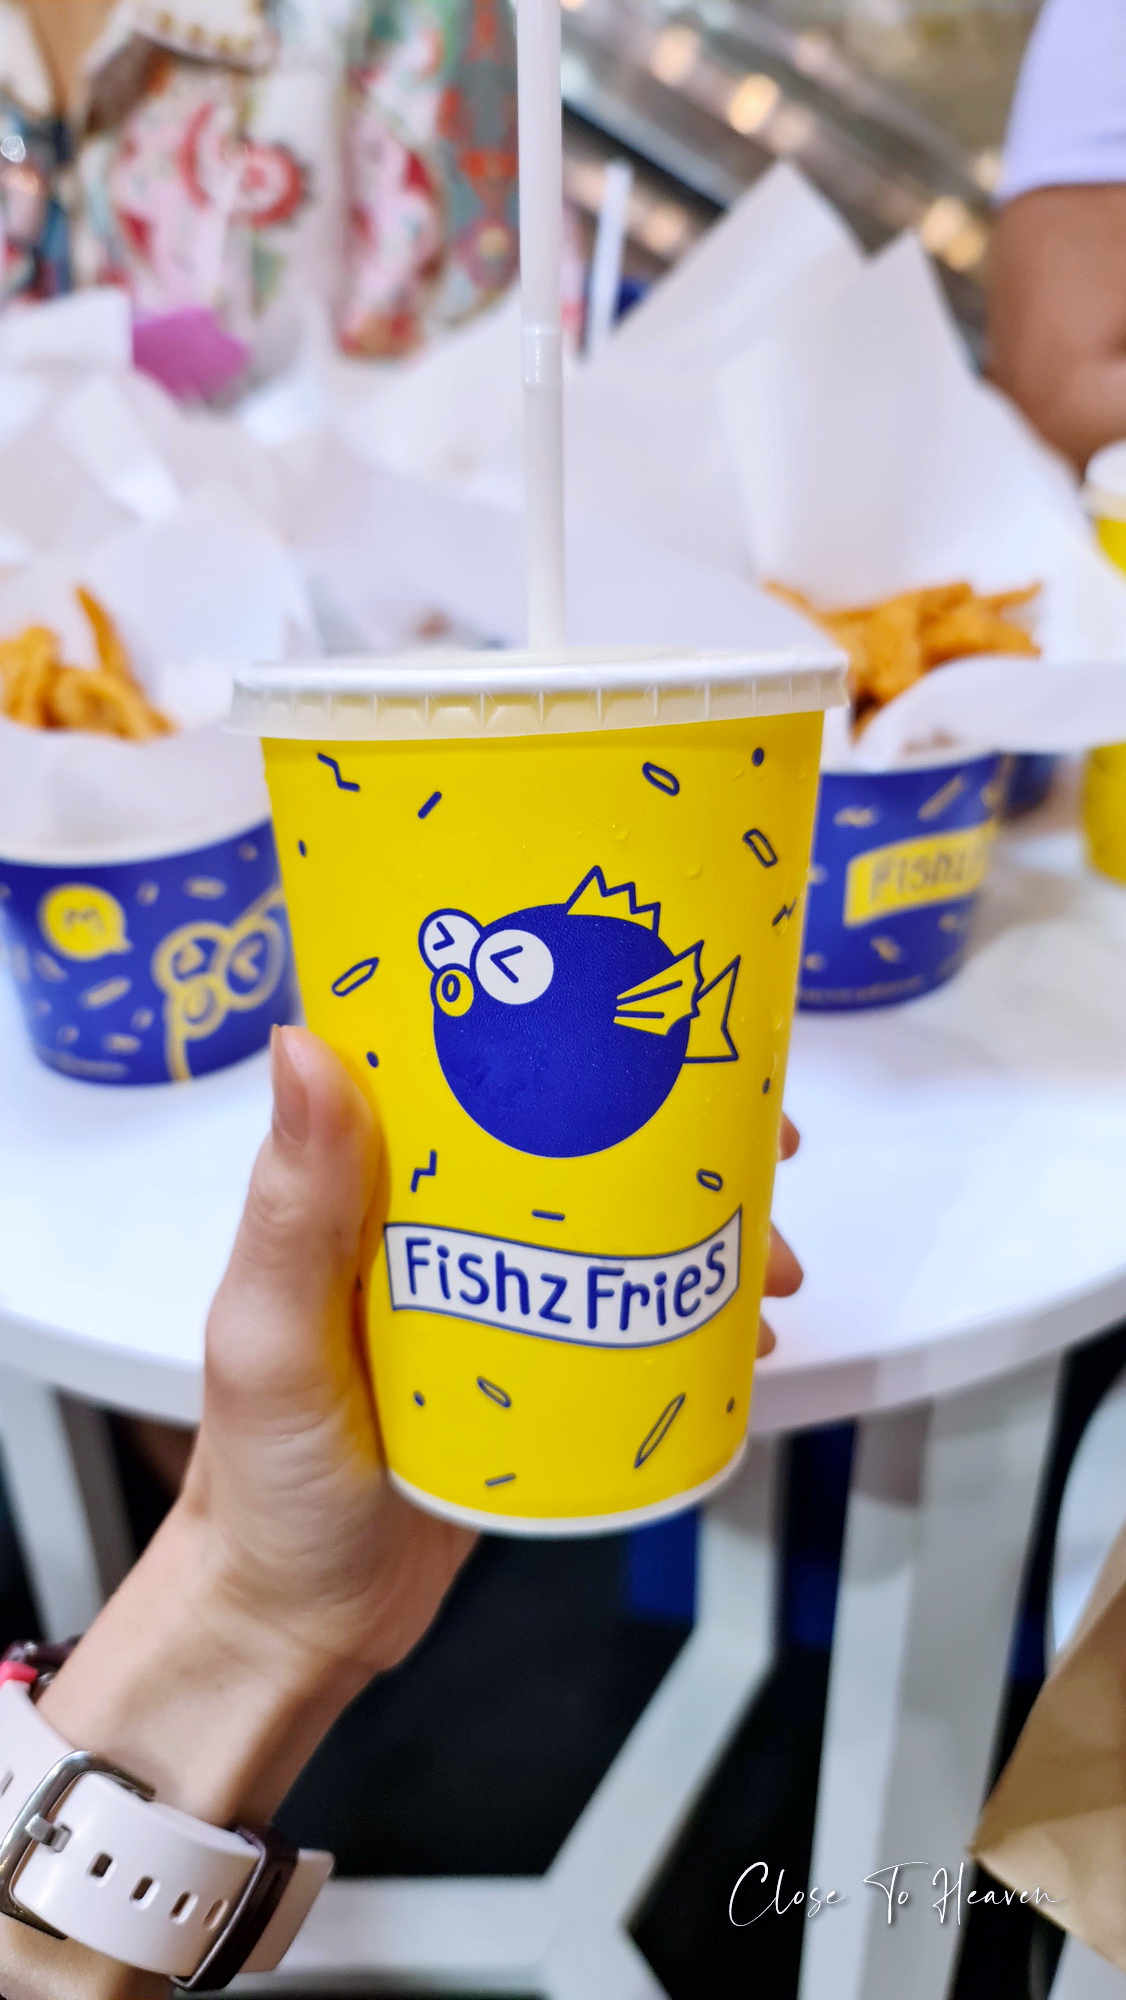 Fishz Fries เฟรนช์ฟรายส์ปลาเส้น เจ้าแรกในประเทศไทย